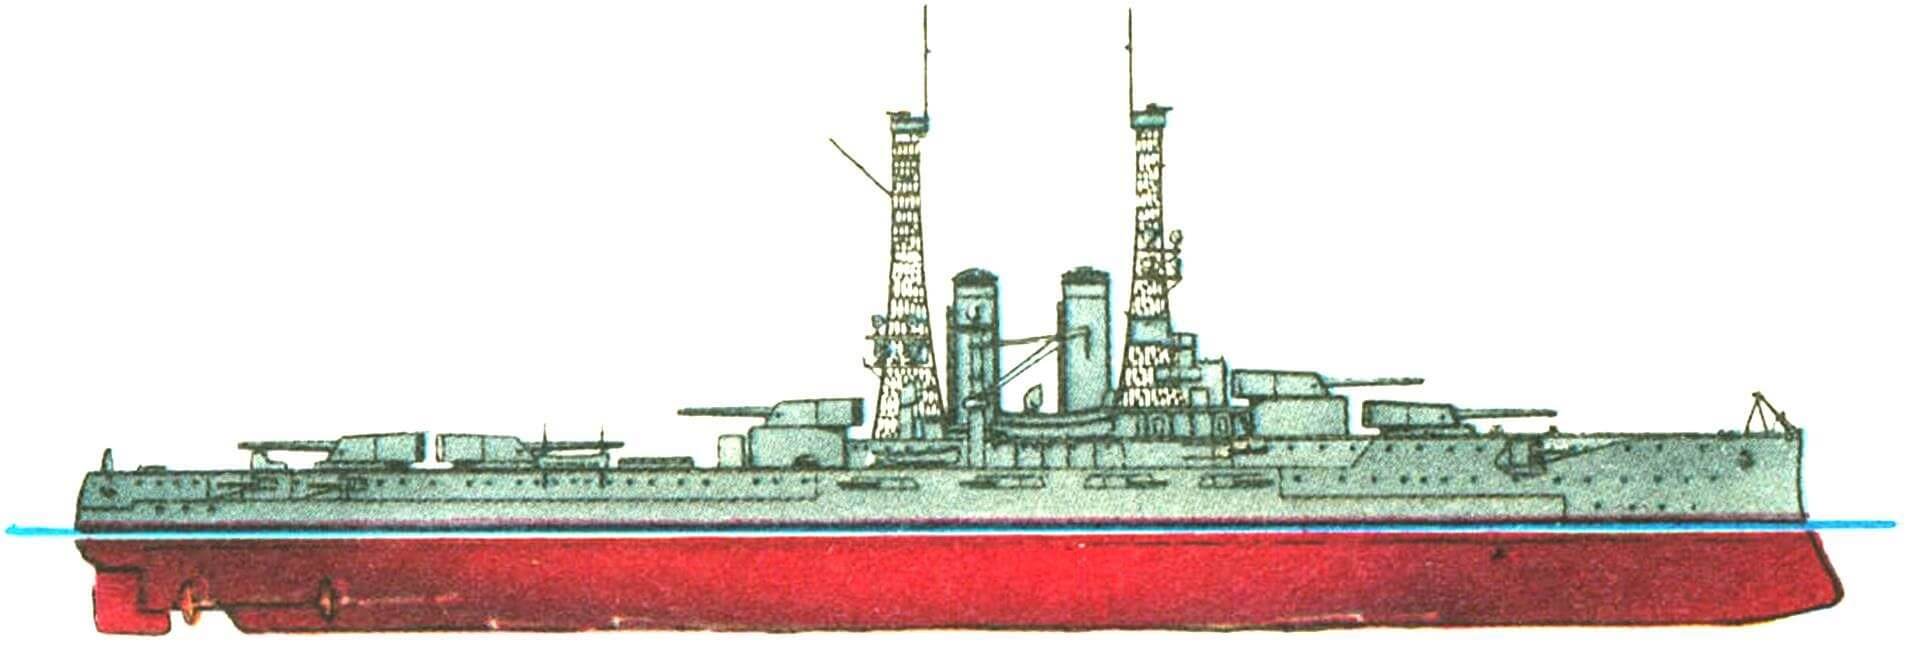 157. Линейный корабль «ЮТА», США, 1911 г.